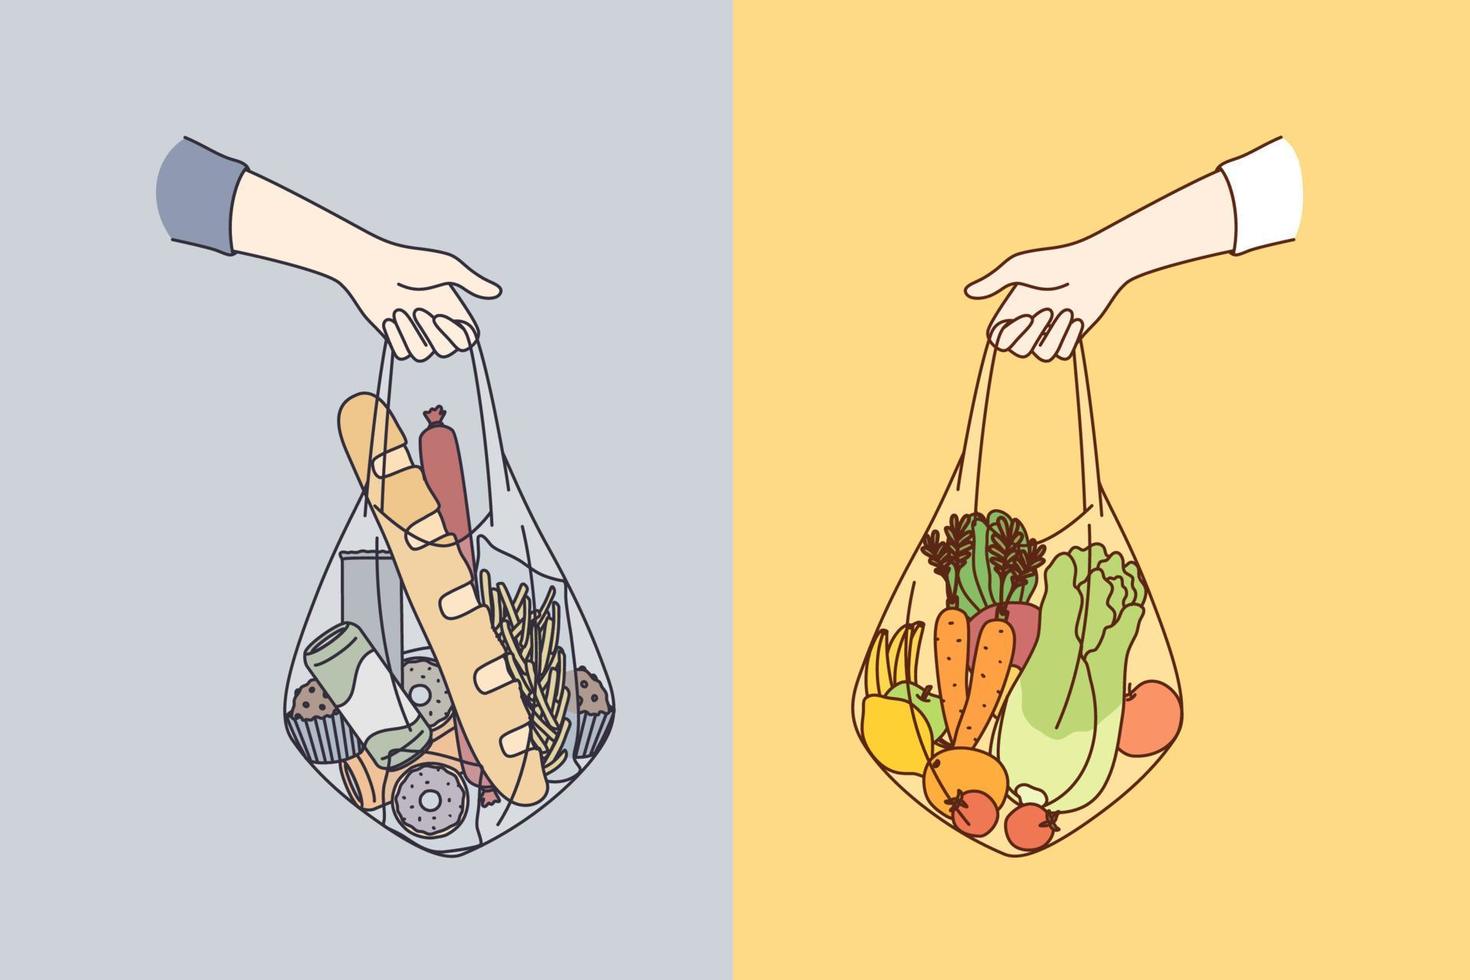 dieta, eligiendo entre varios conceptos de alimentos. manos humanas sosteniendo bolsas de vegetales saludables veganos taw alimentos naturales e ingredientes ordinarios ilustración vectorial vector